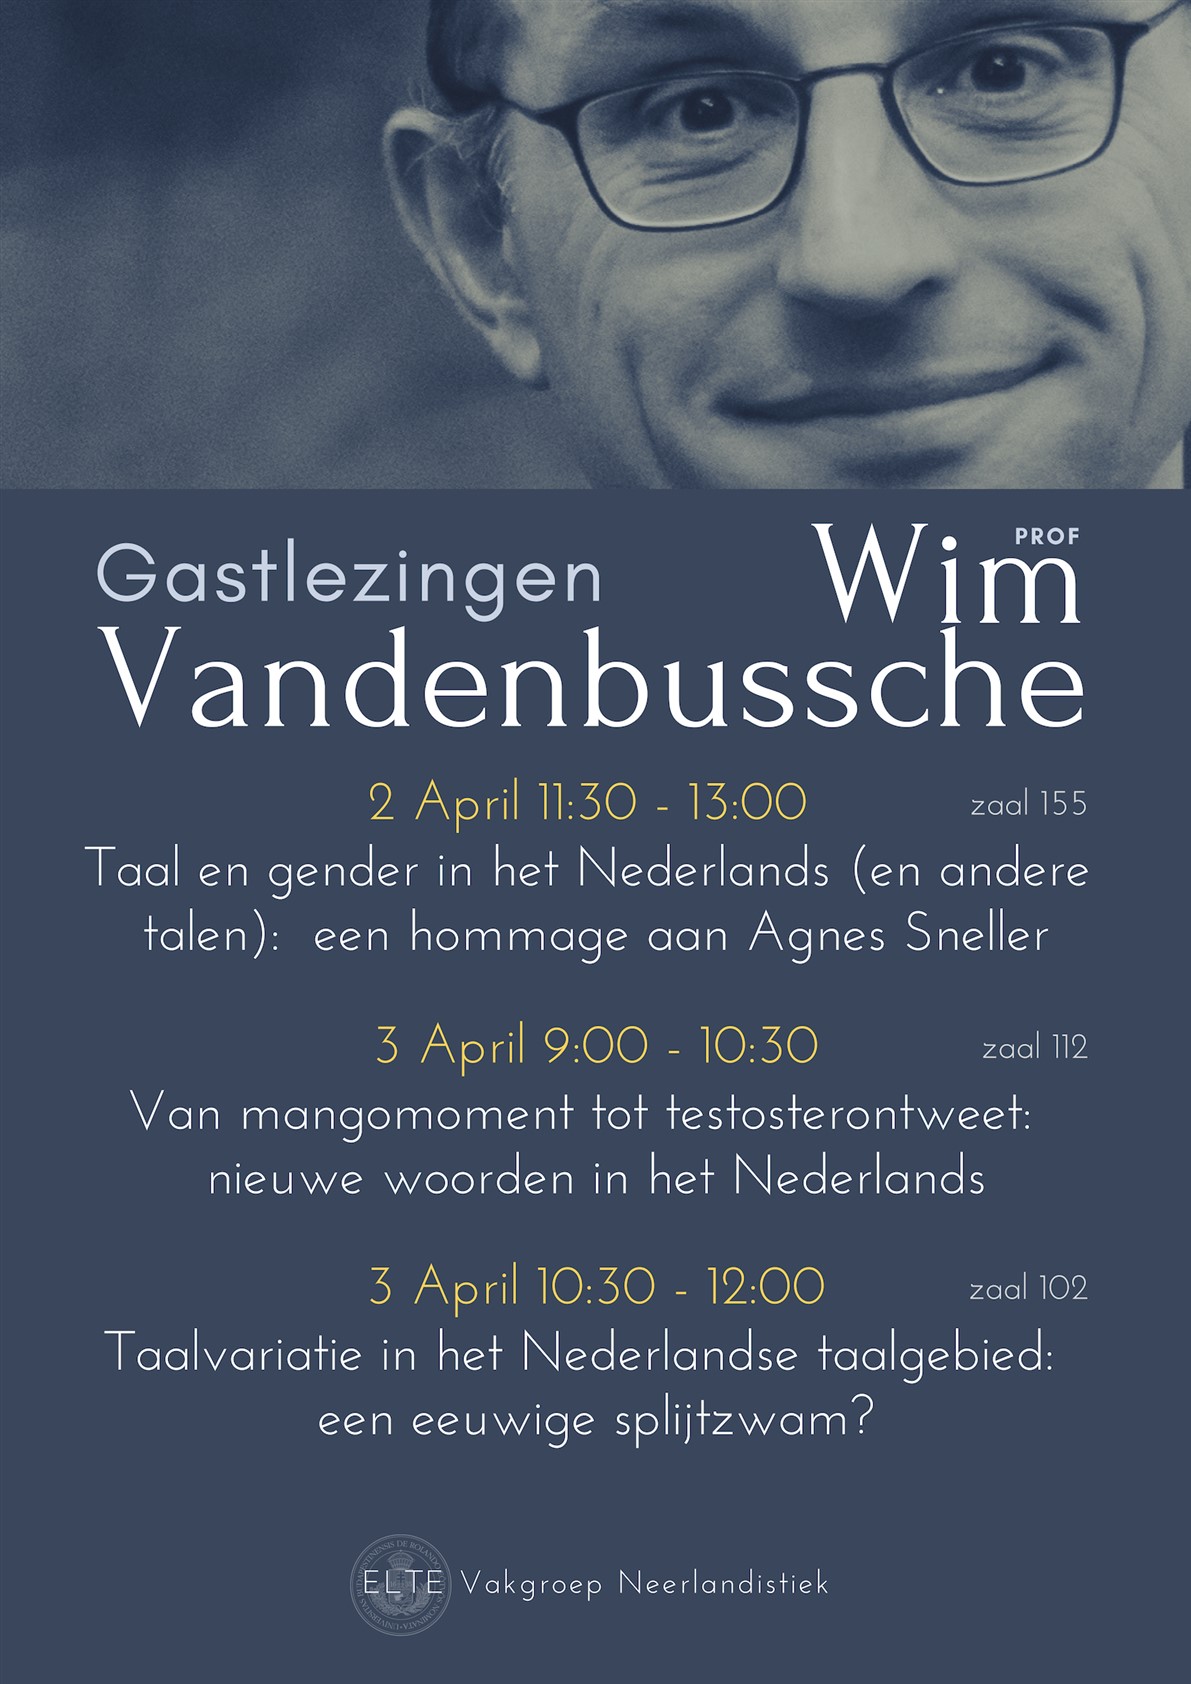 Wim Vandenbussche 2019 03 28 (1191 x 1684)